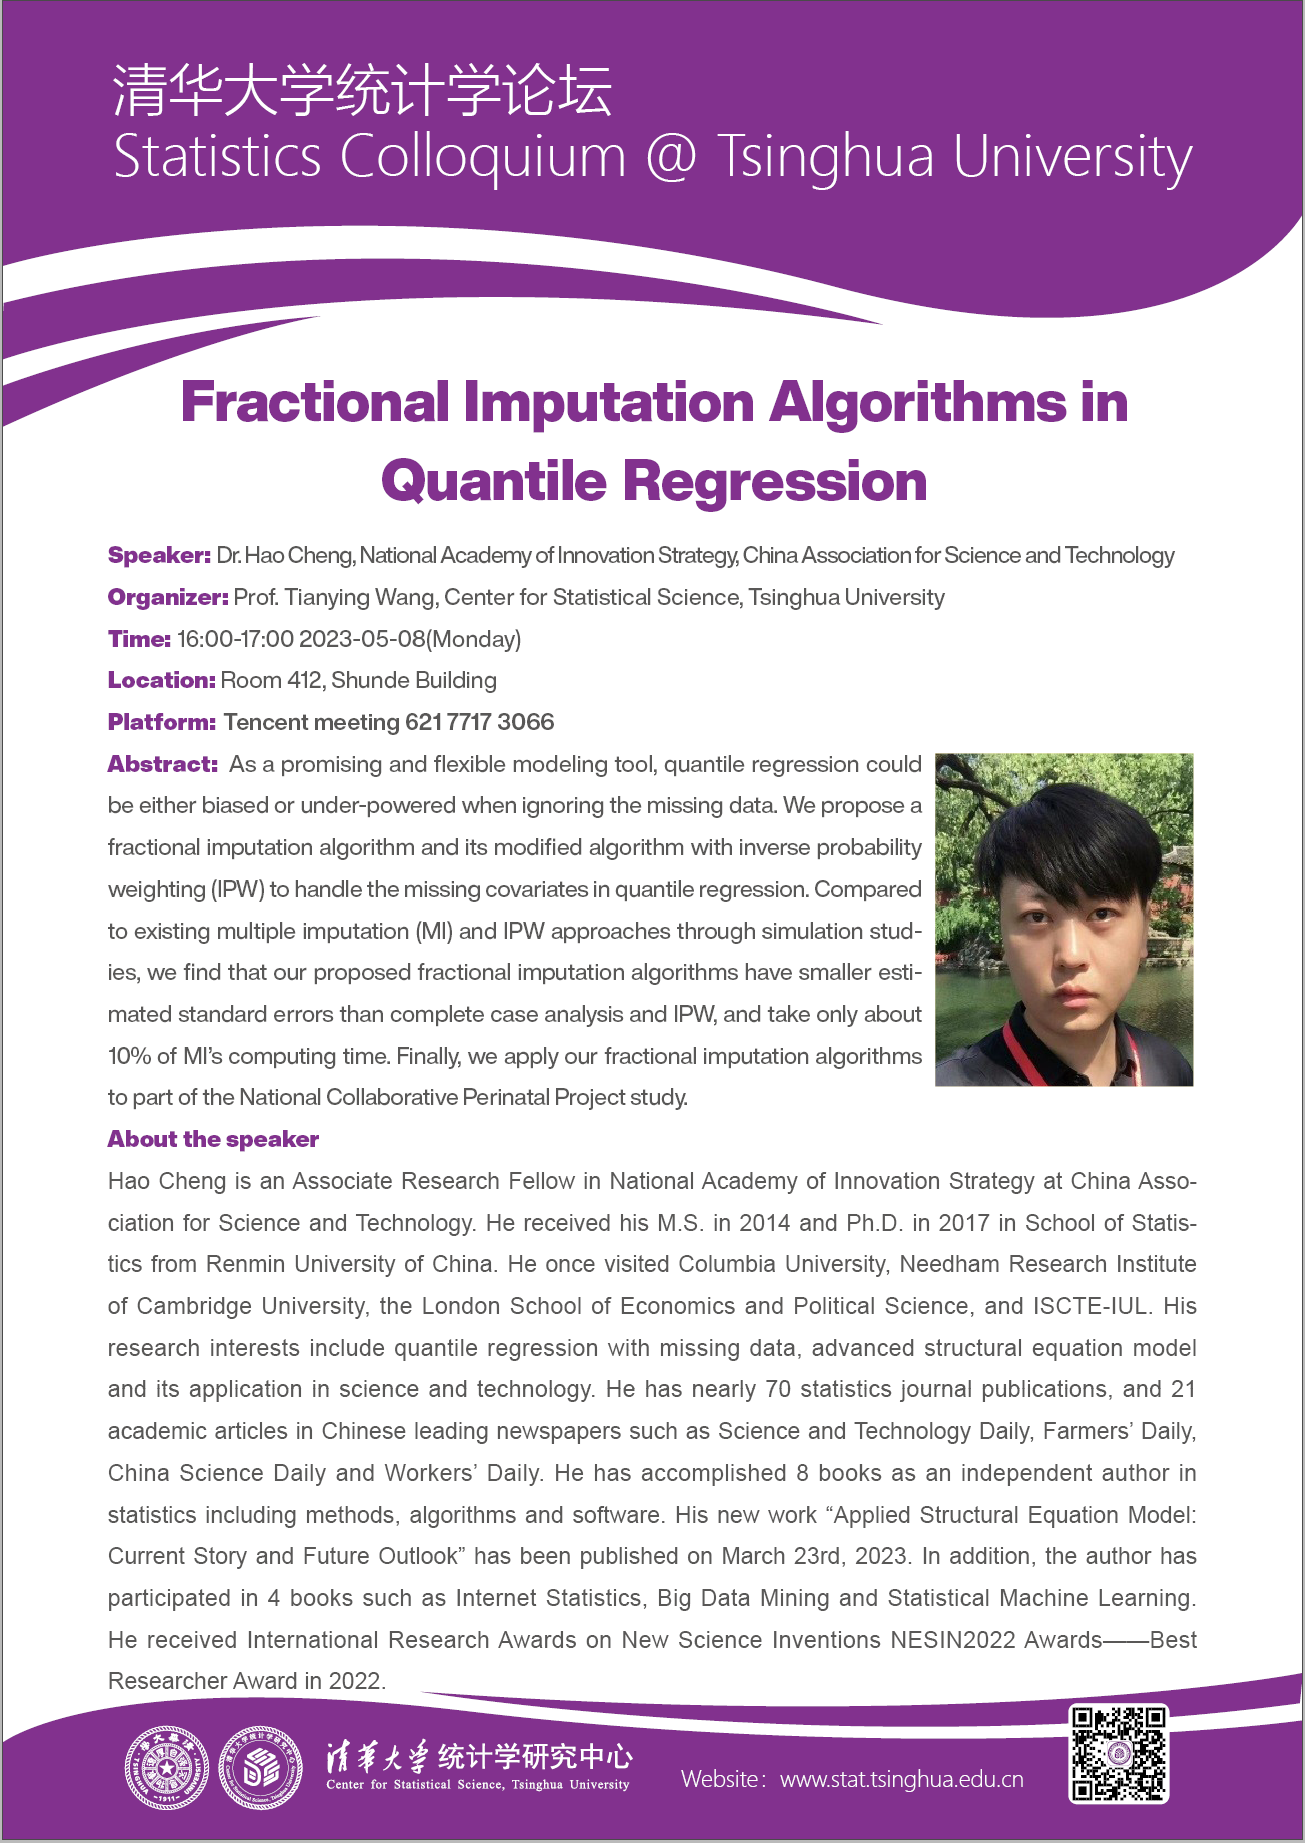 【统计学论坛】Fractional Imputation Algorithms in Quantile Regression